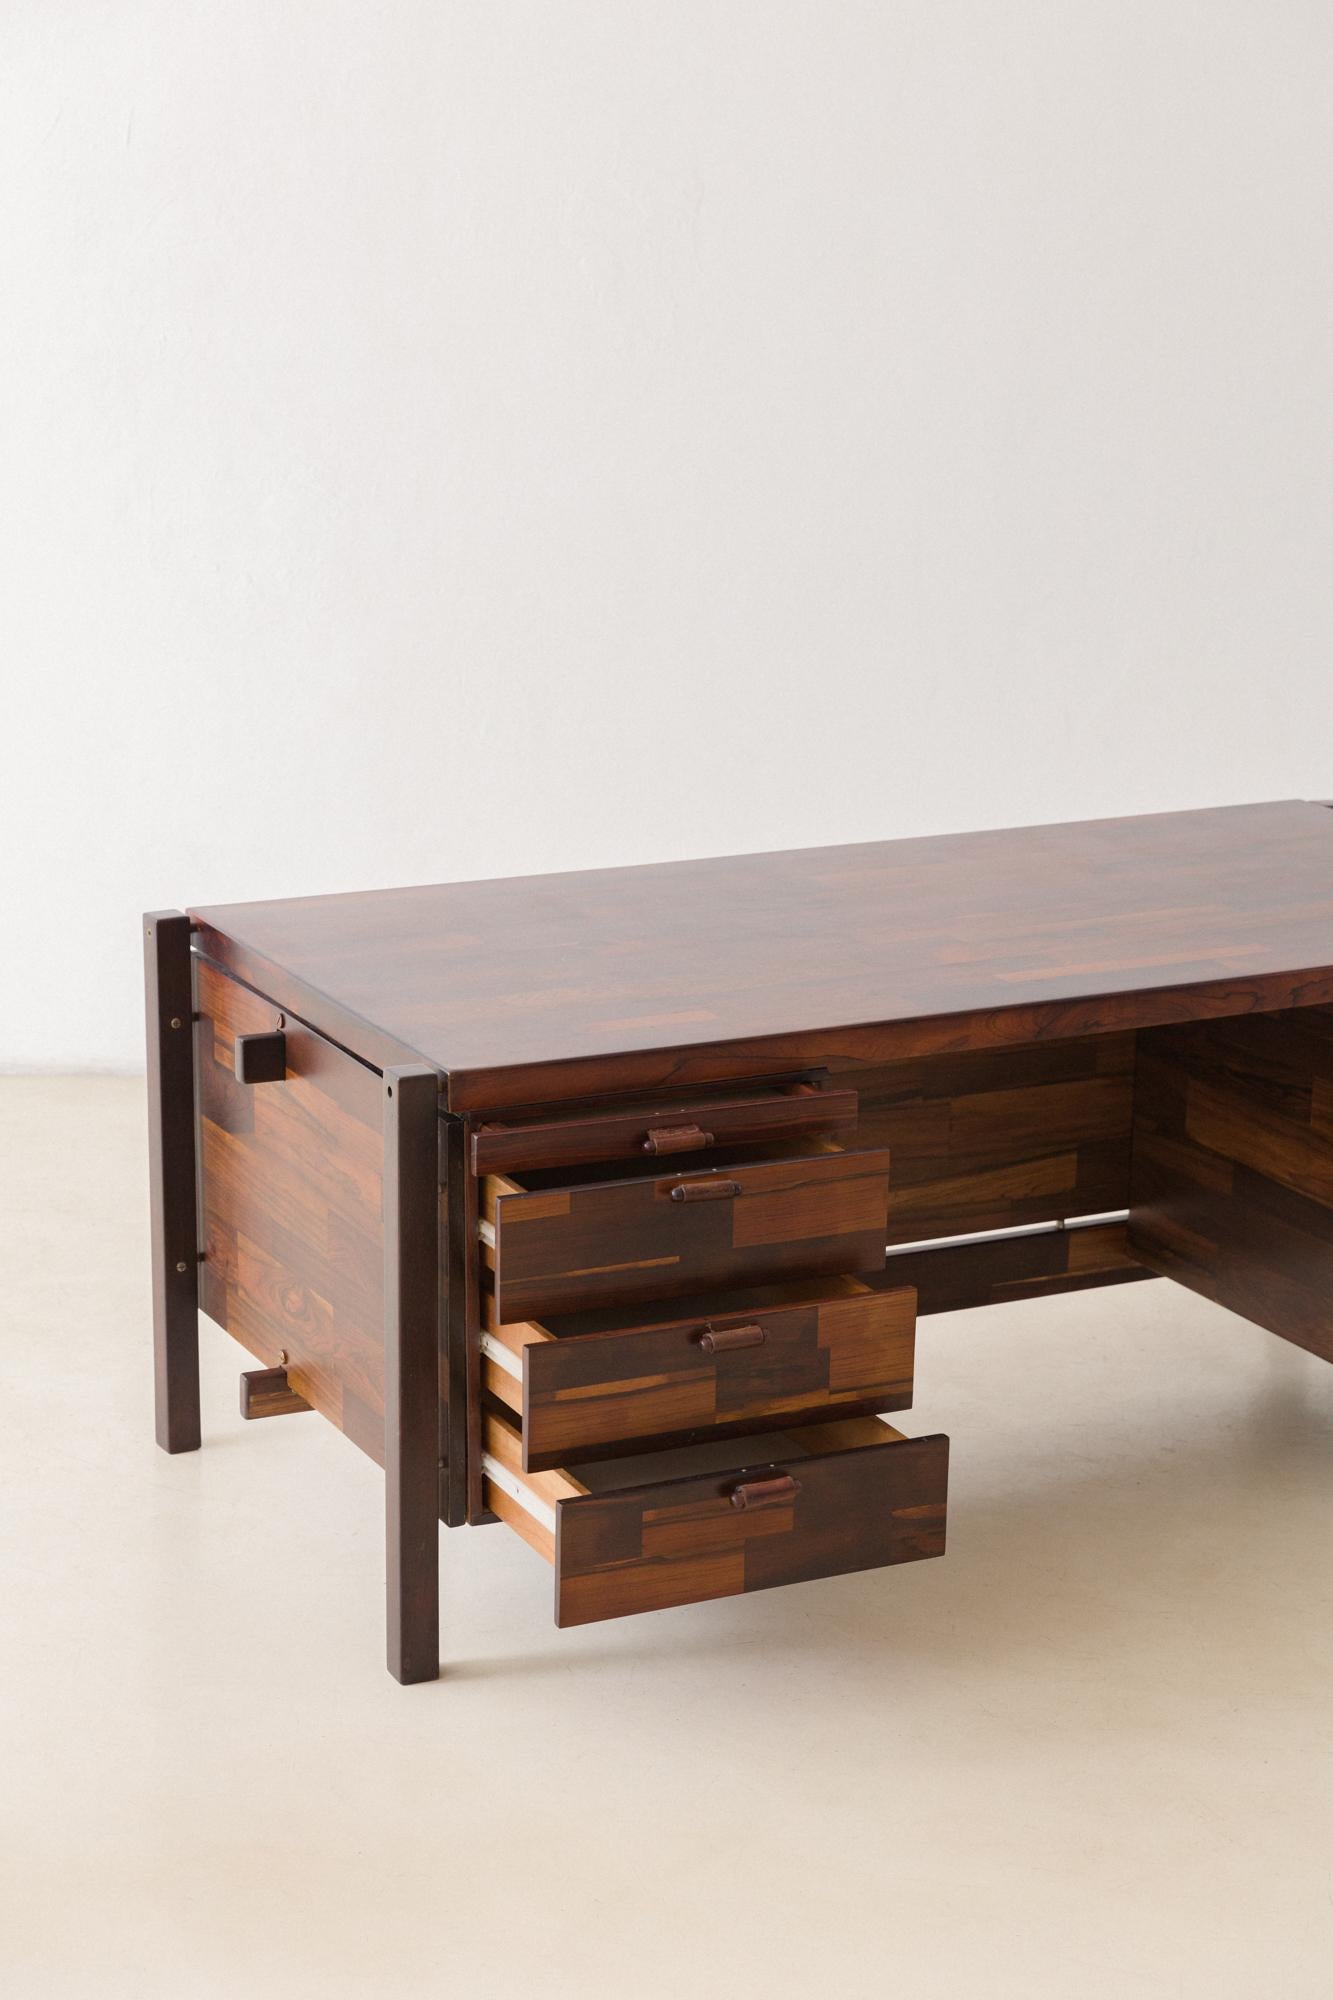 Rosewood Desk by Jorge Zalszupin, L'Atelier, 1960s, Brazilian Midcentury Modern 1